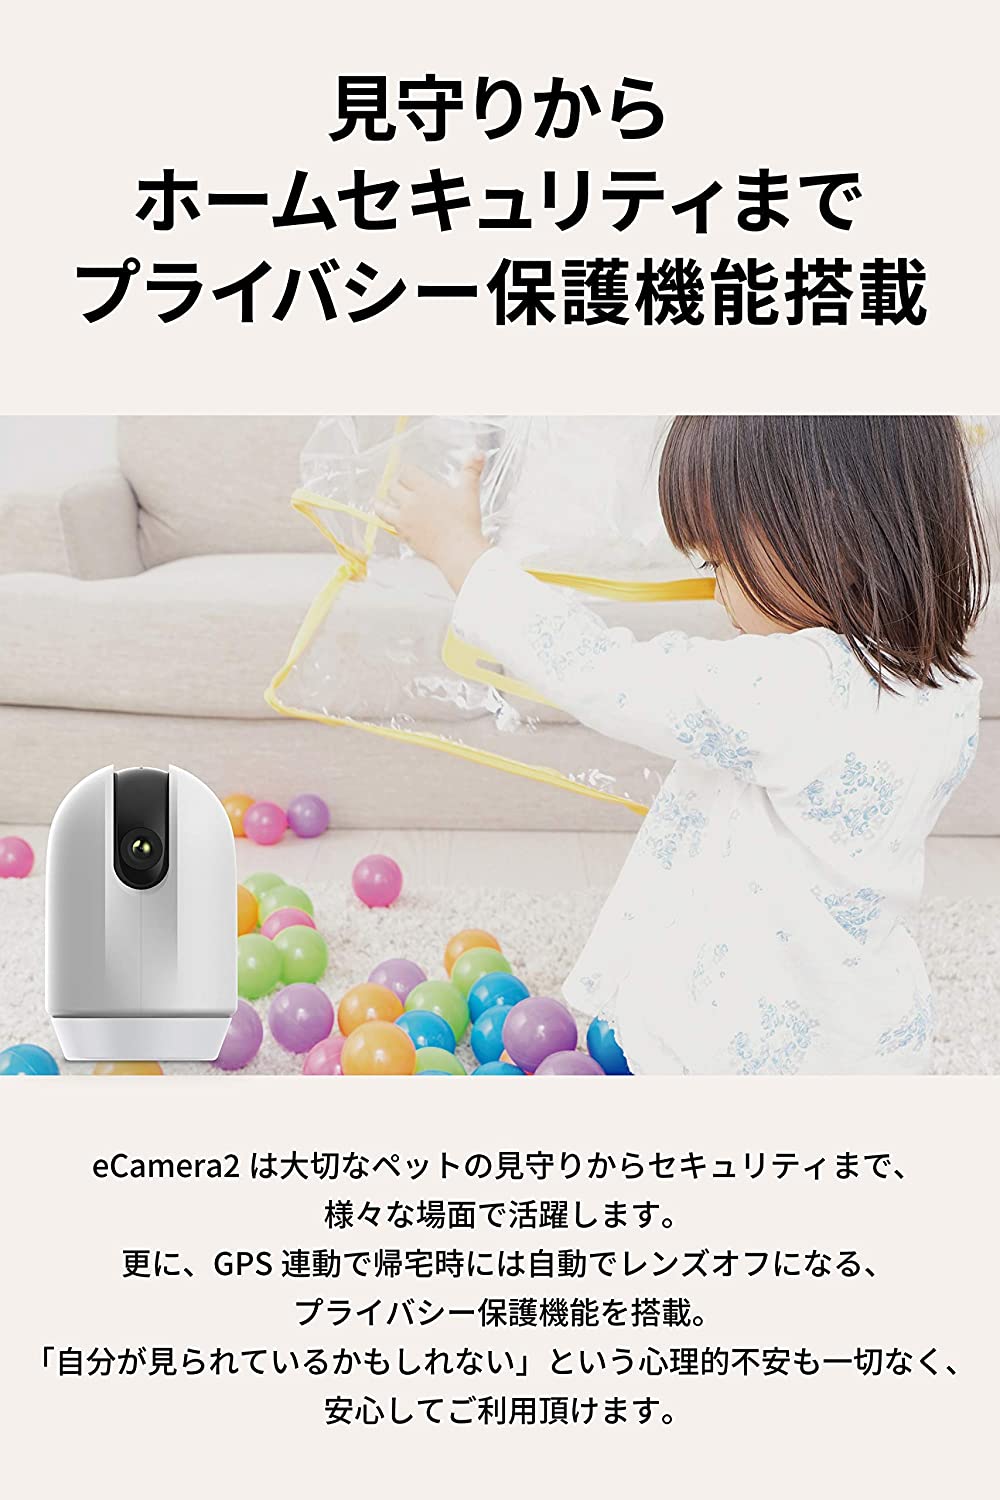 スマートカメラ eCamera2 – HomeLink Store for precious